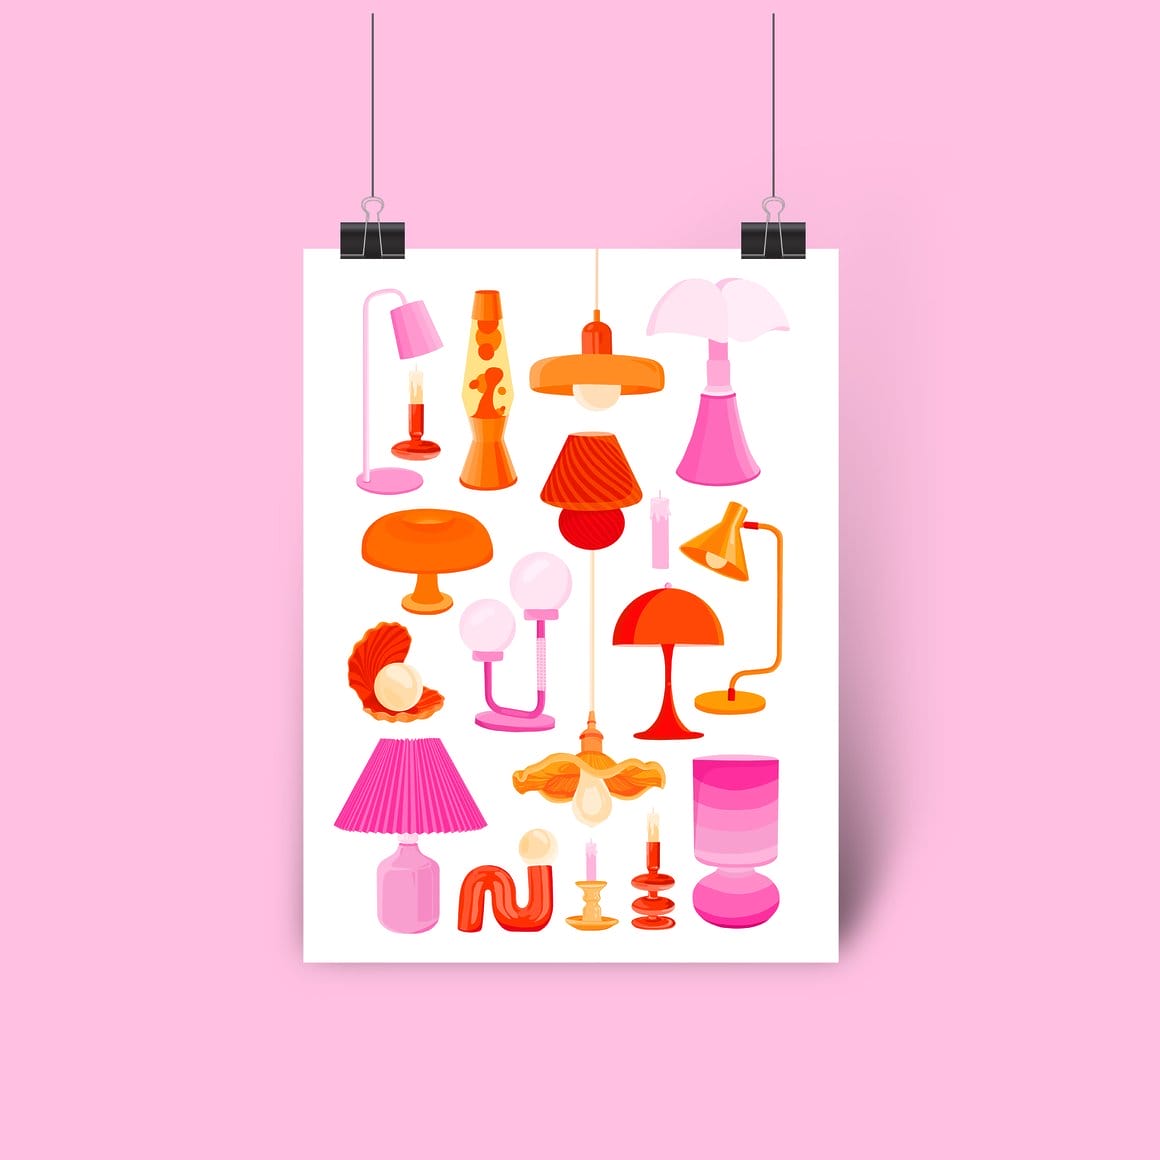 Illustrations avec différentes formes de lampes dans les tons roses / rouges / oranges 